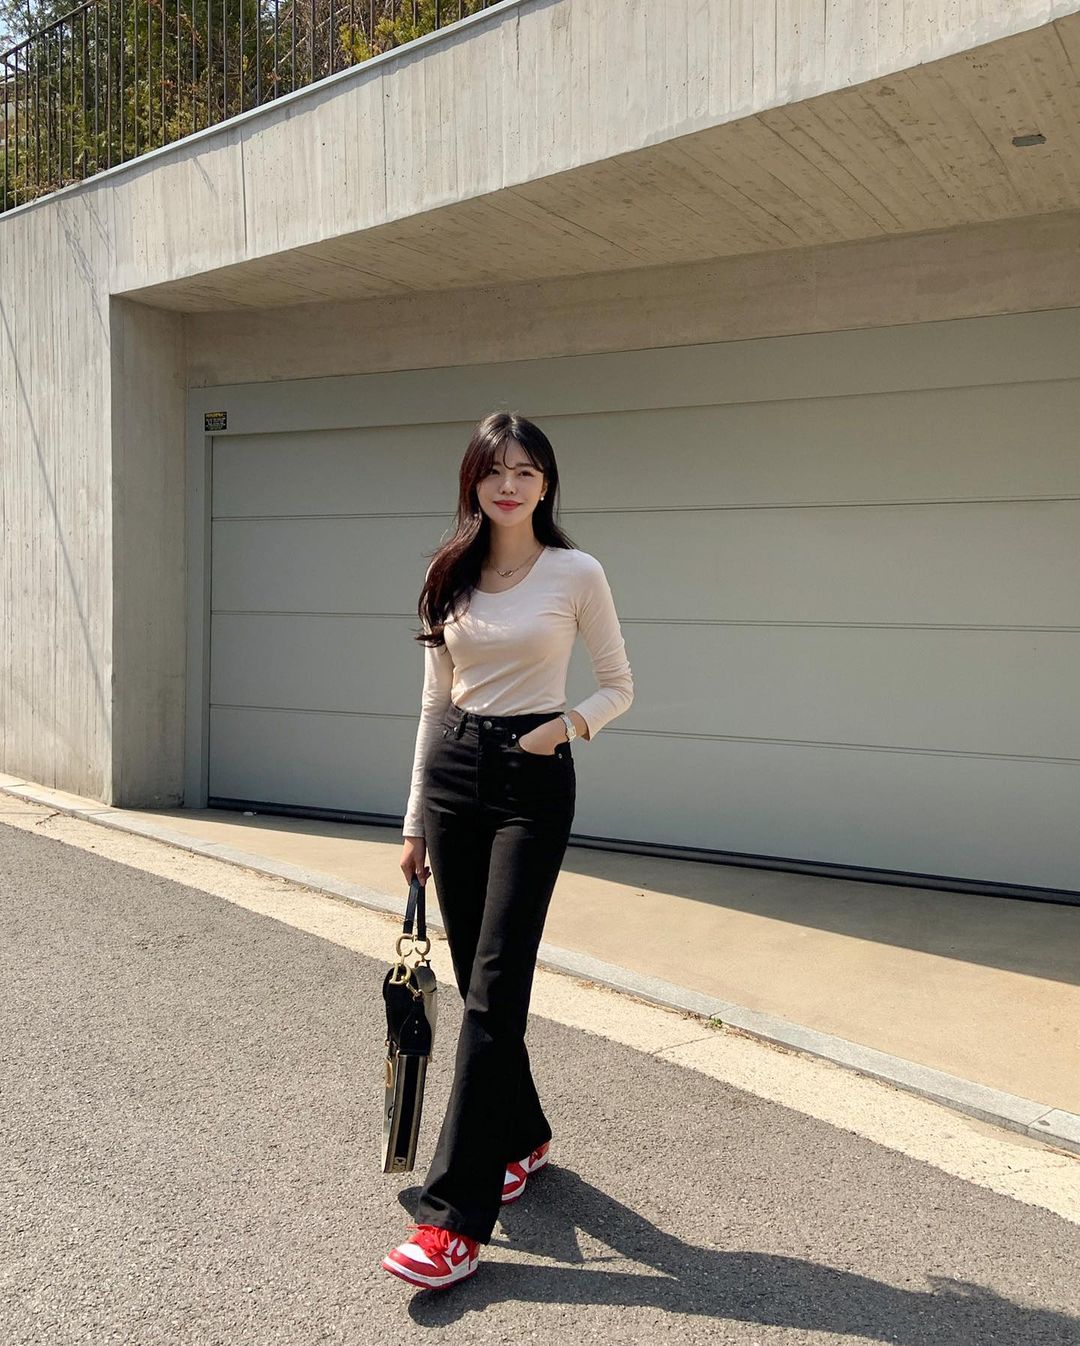 Học nàng blogger Hàn cách diện jeans “đỉnh của chóp”: Vừa hack dáng vừa thanh lịch để diện đến sở làm - Ảnh 9.